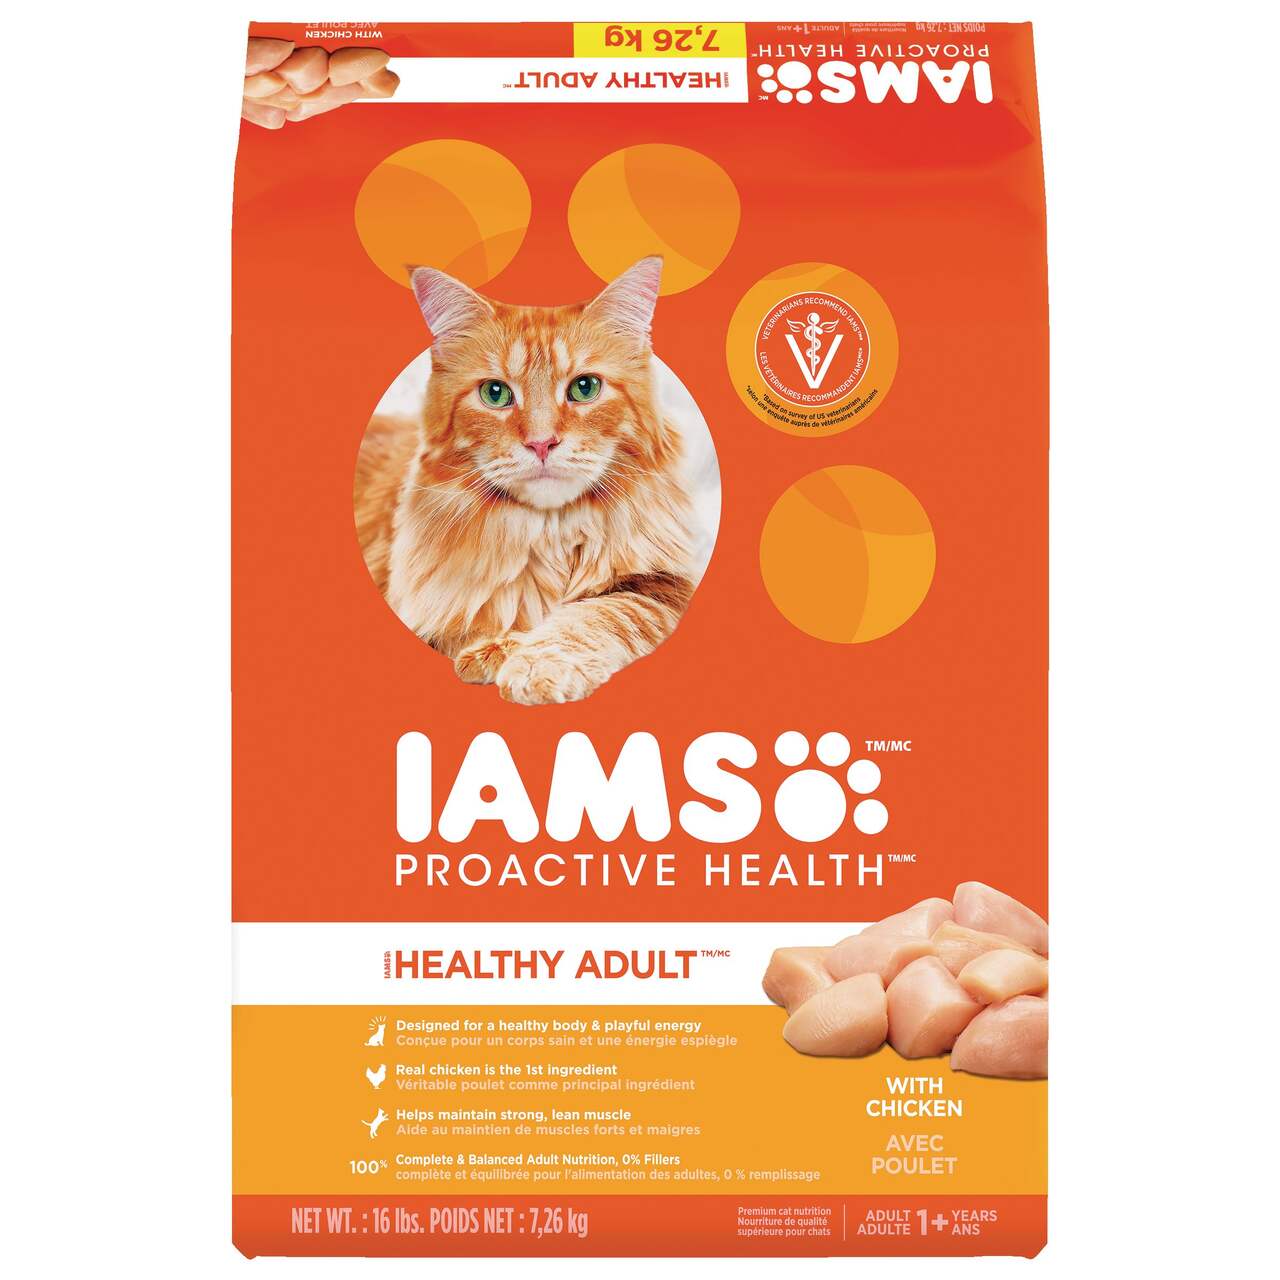 Nourriture pour chats : 157 produits testés